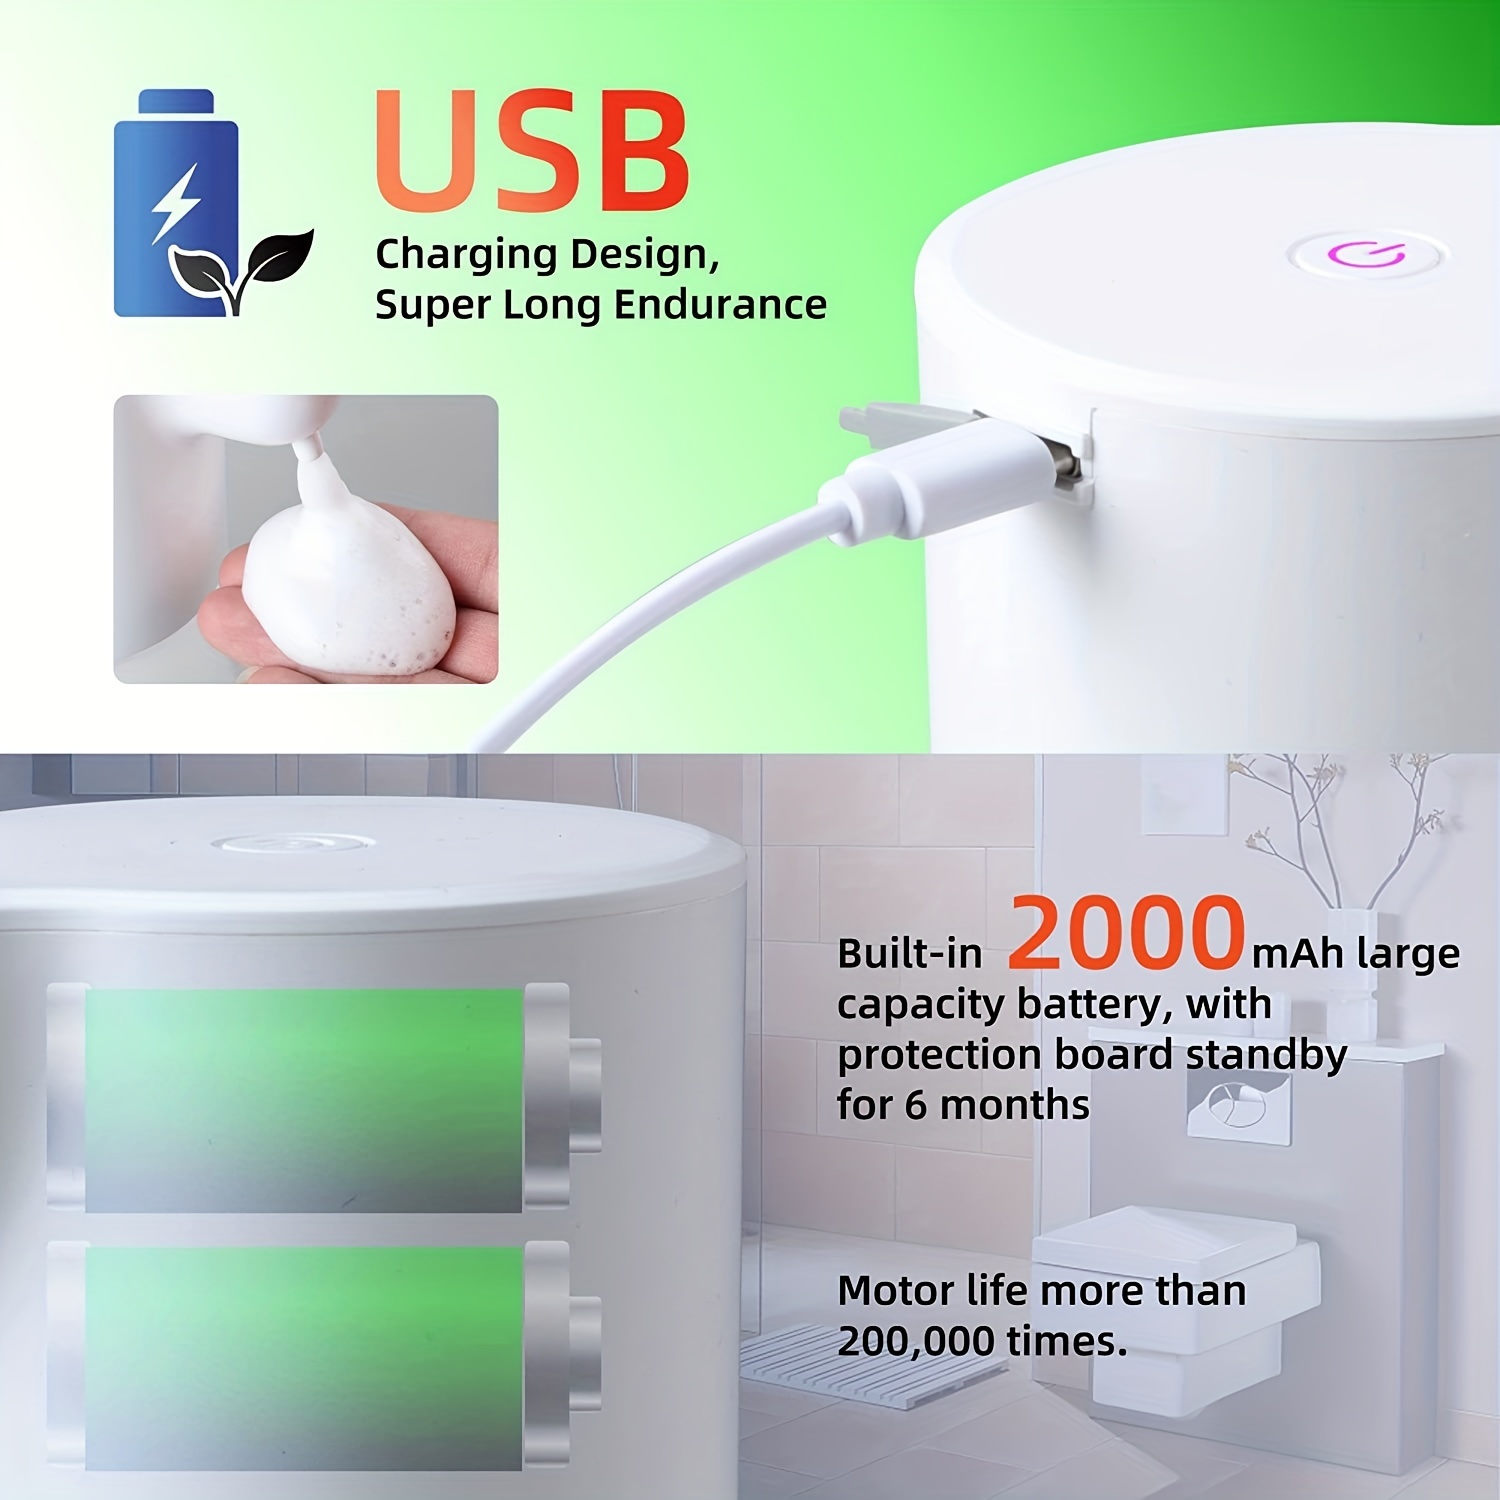 Dispensador automático de jabón líquido de espuma por inducción, máquina de  espuma líquida manos libres, herramienta de mano infrarroja para baño, ino  , Blanco BLESIY Dispensador de jabón